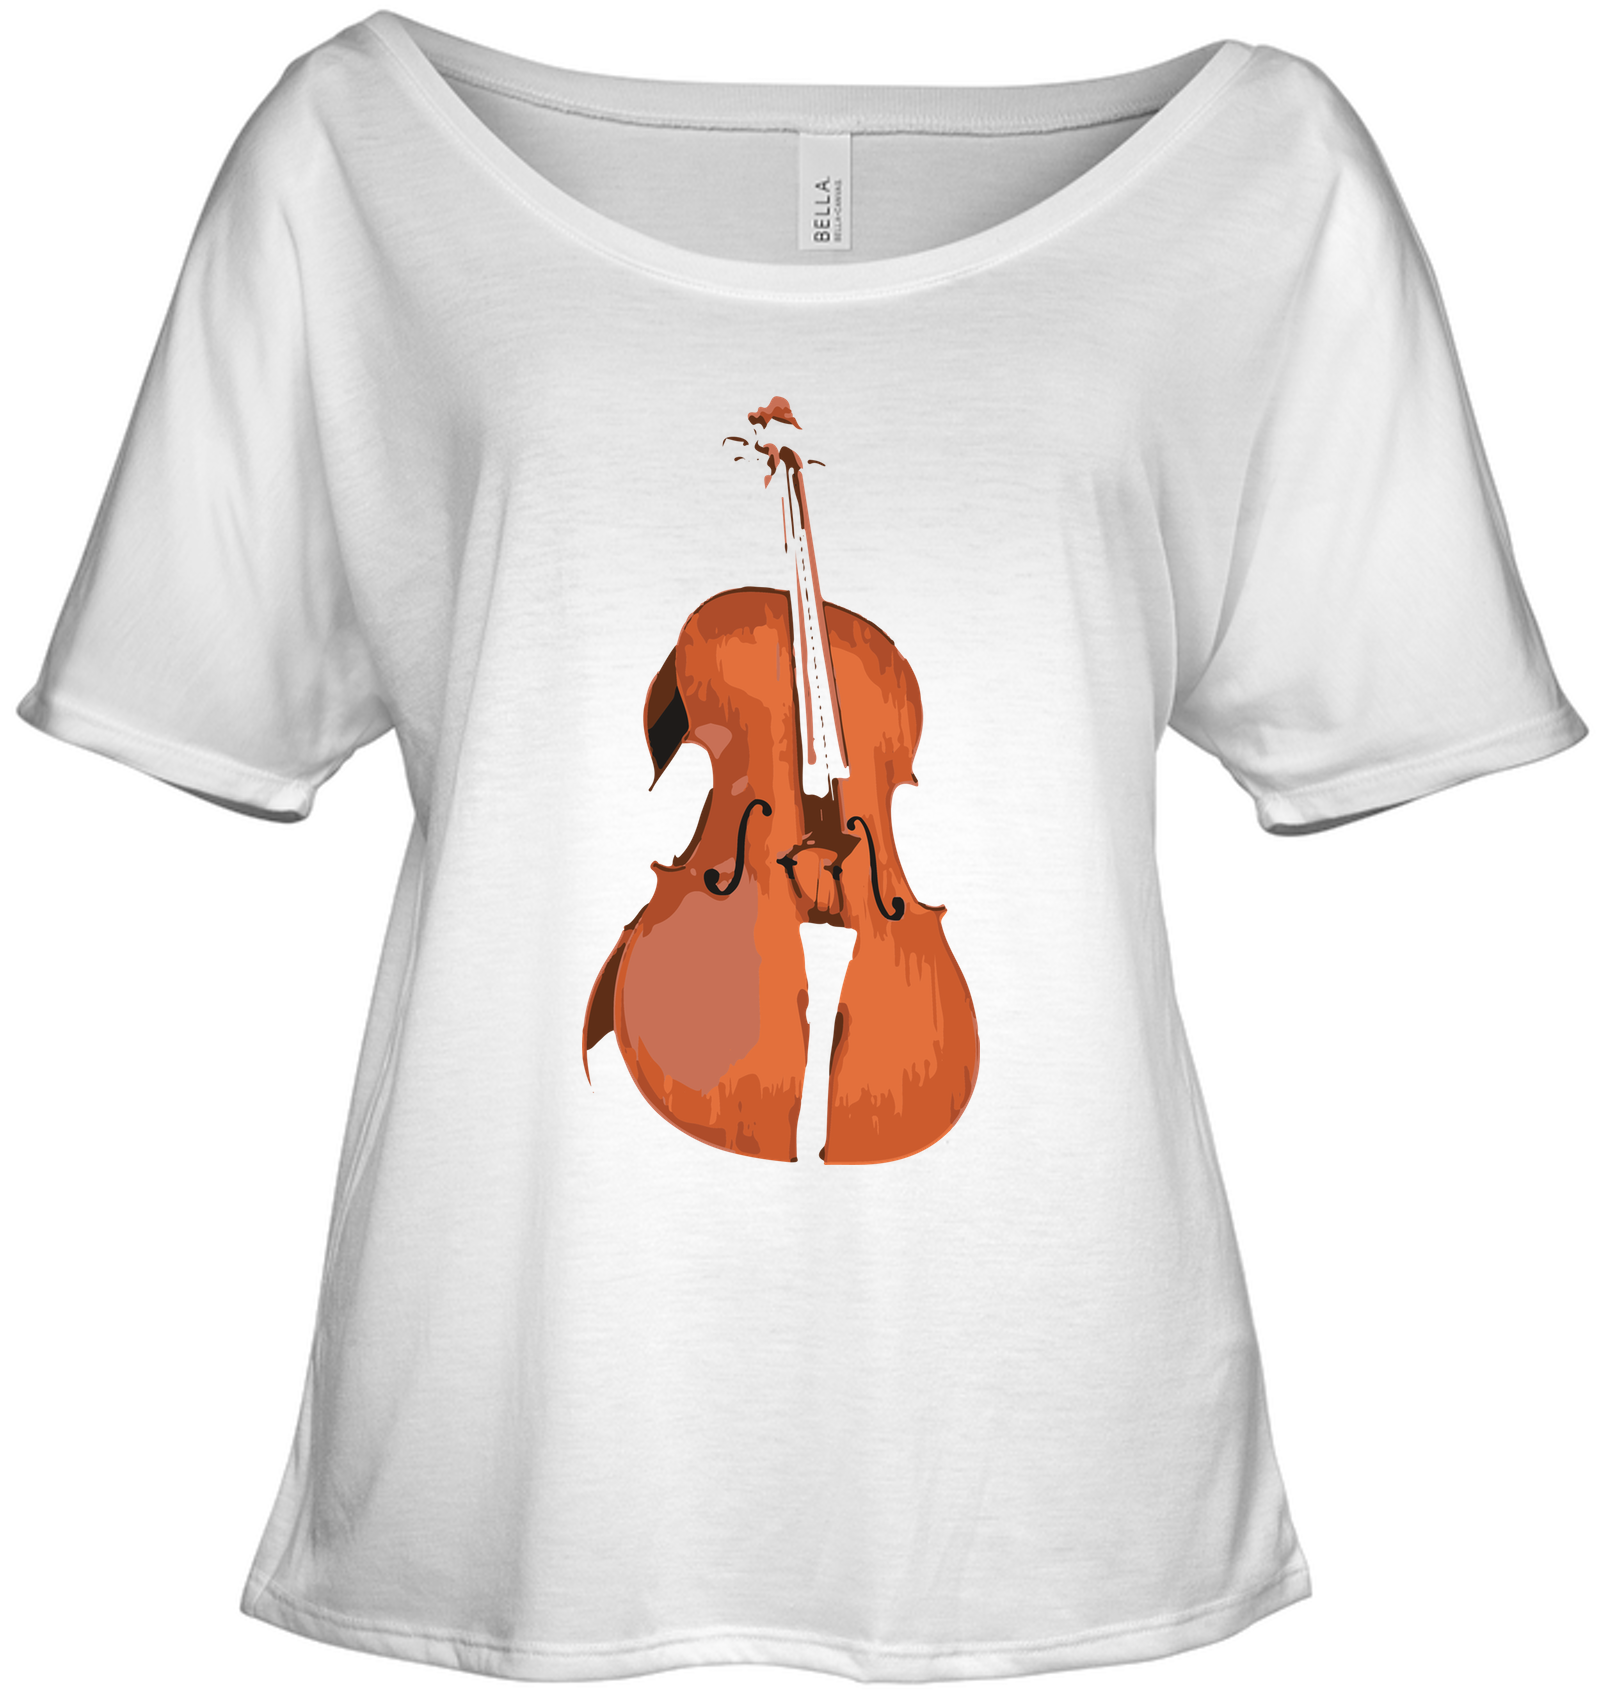 The Cello - Bella + Canvas Women's Slouchy Tee